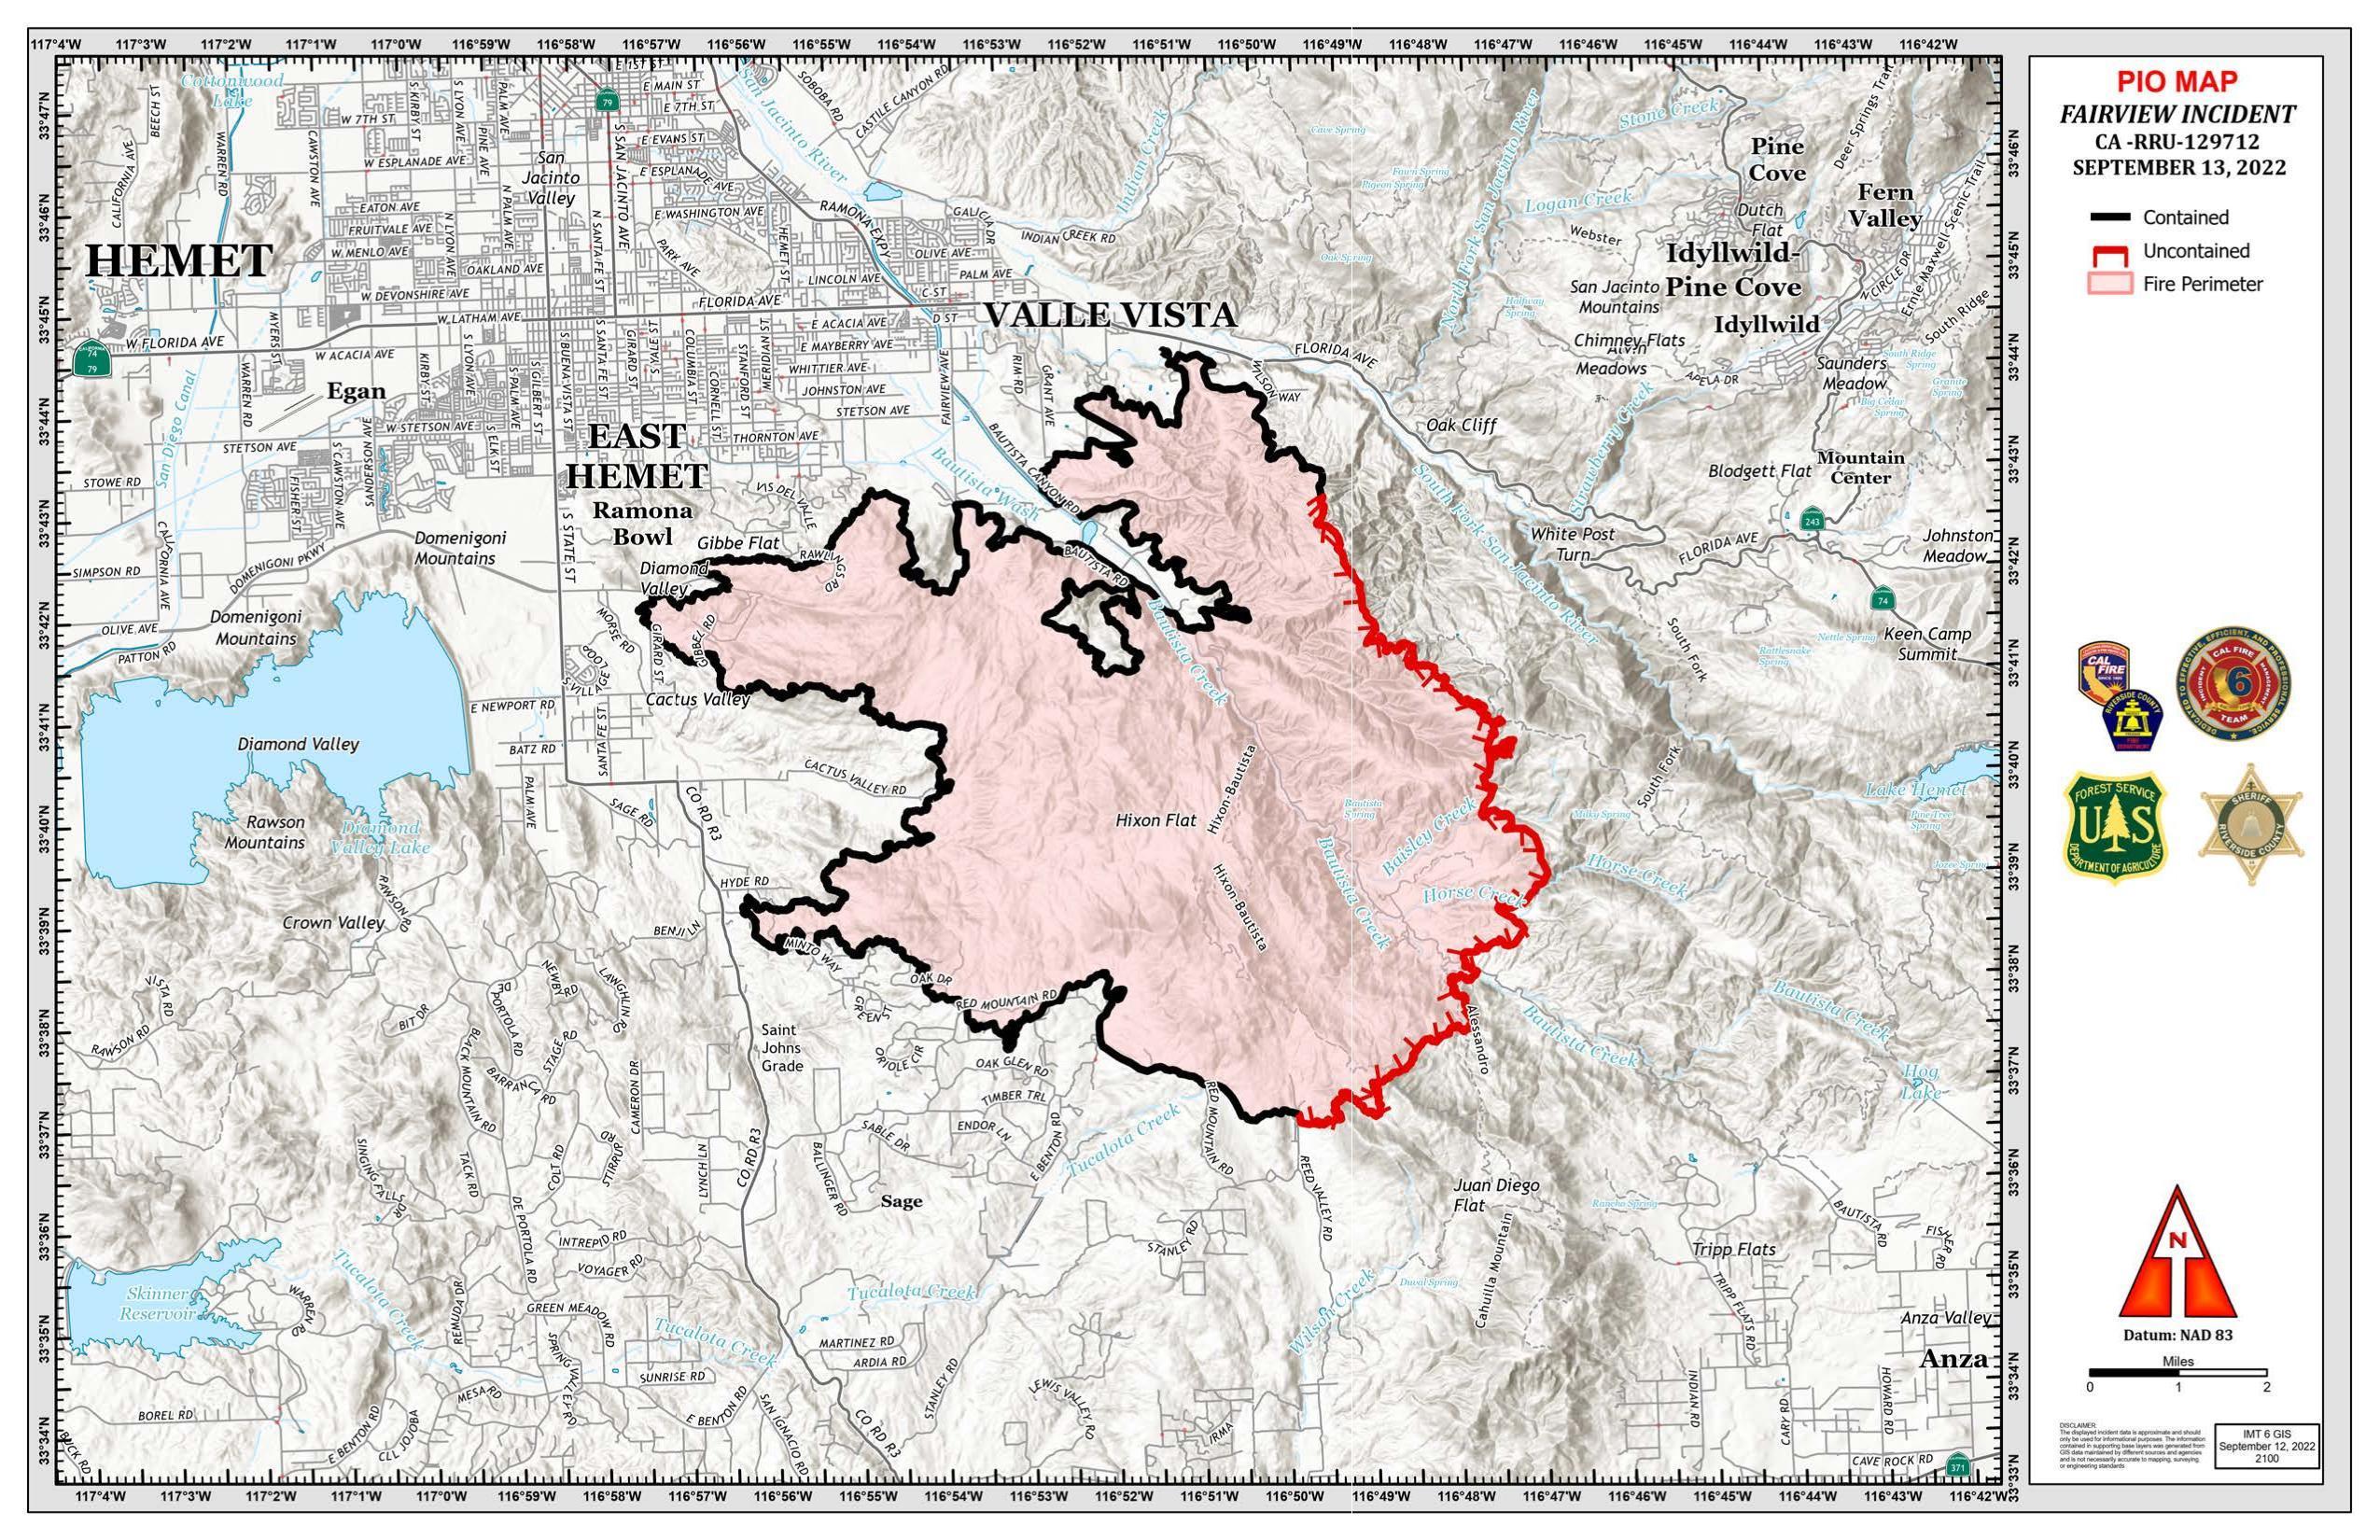 Fairview Fire Public Info Map Sept 13, 2022